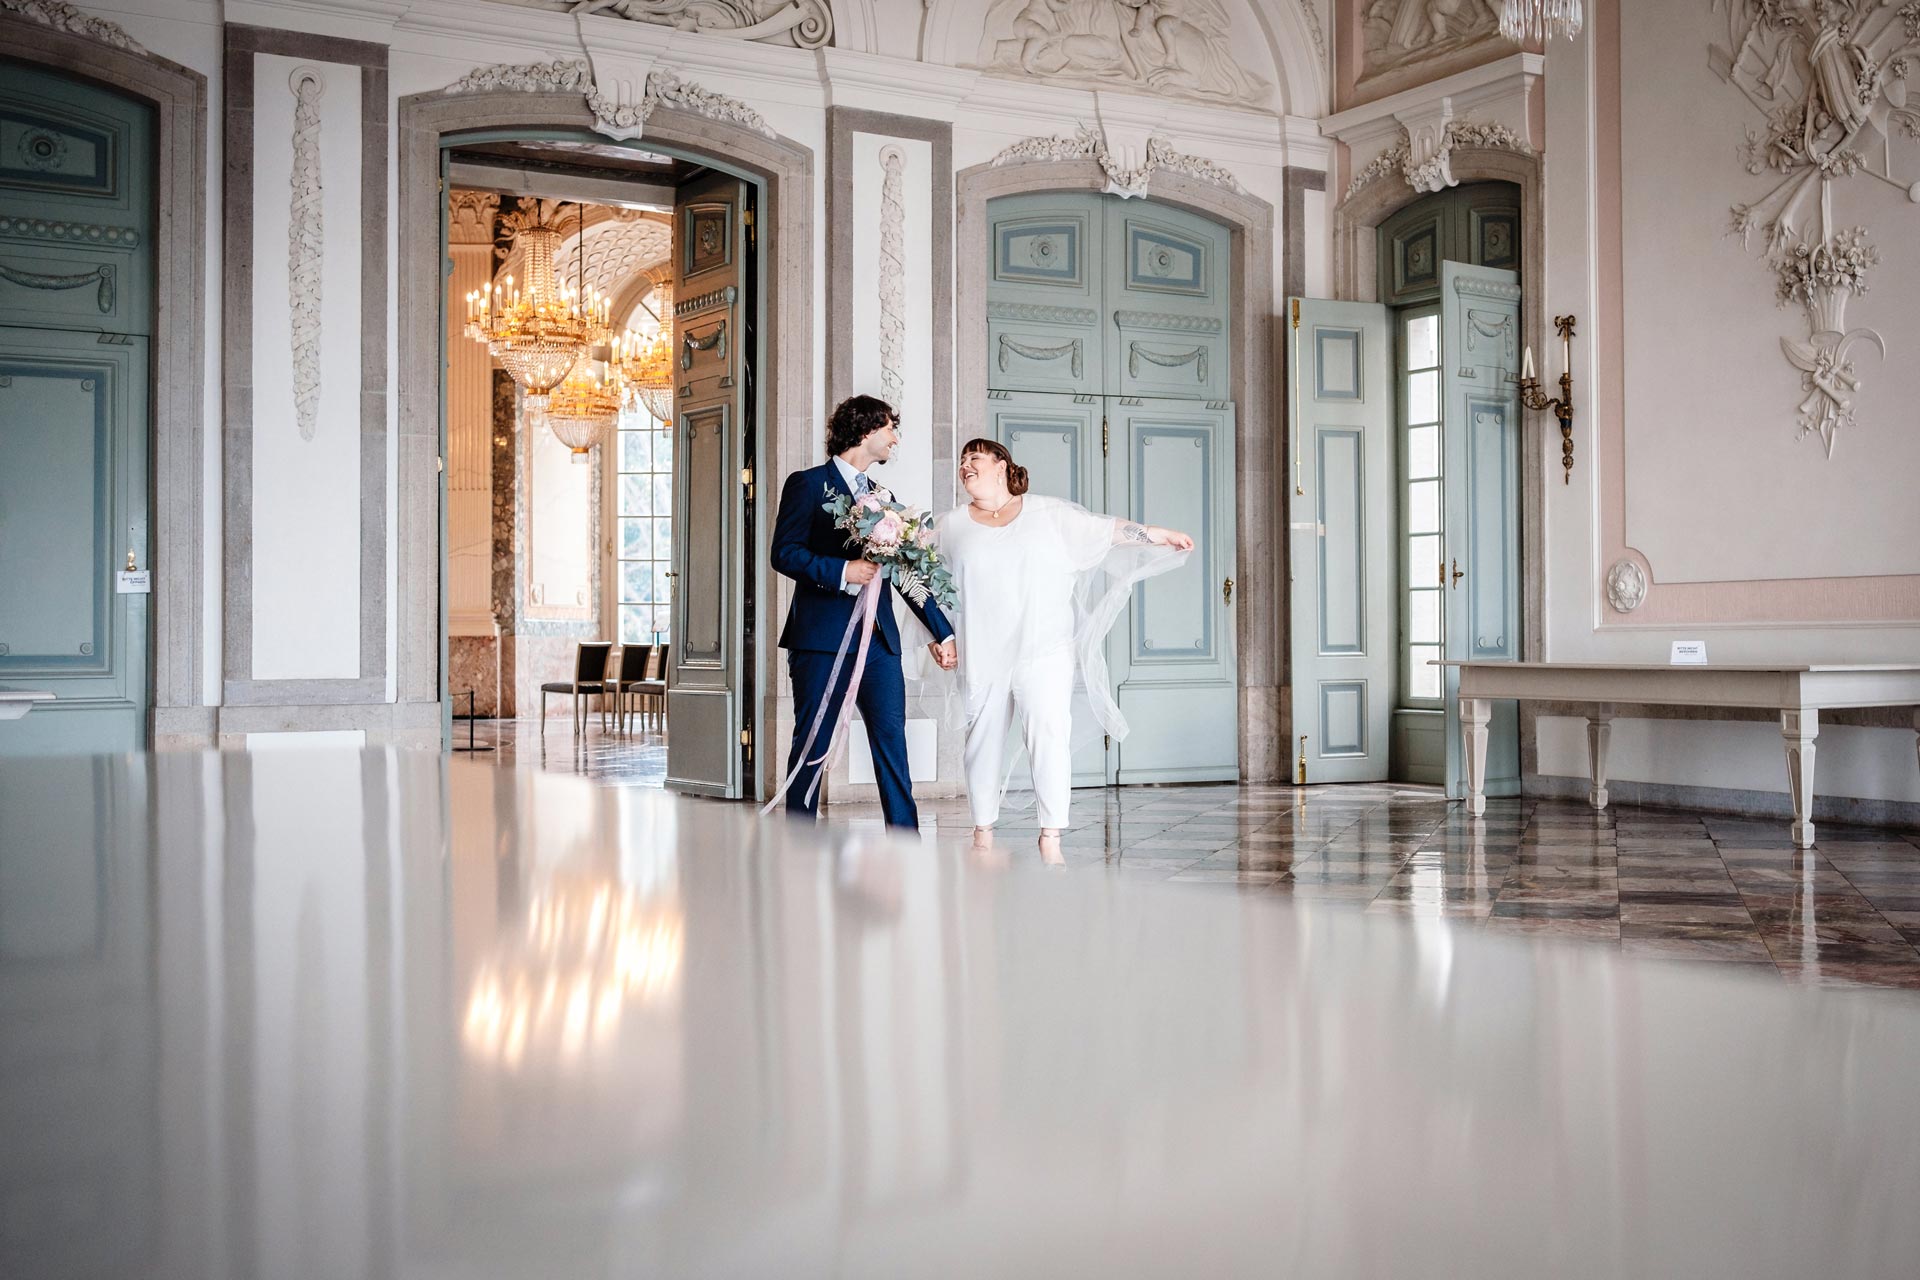 Brautpaar bei der Traumhochzeit in Schloss Benrath in Düsseldorf mit Hochzeitsplaner Let's Marry